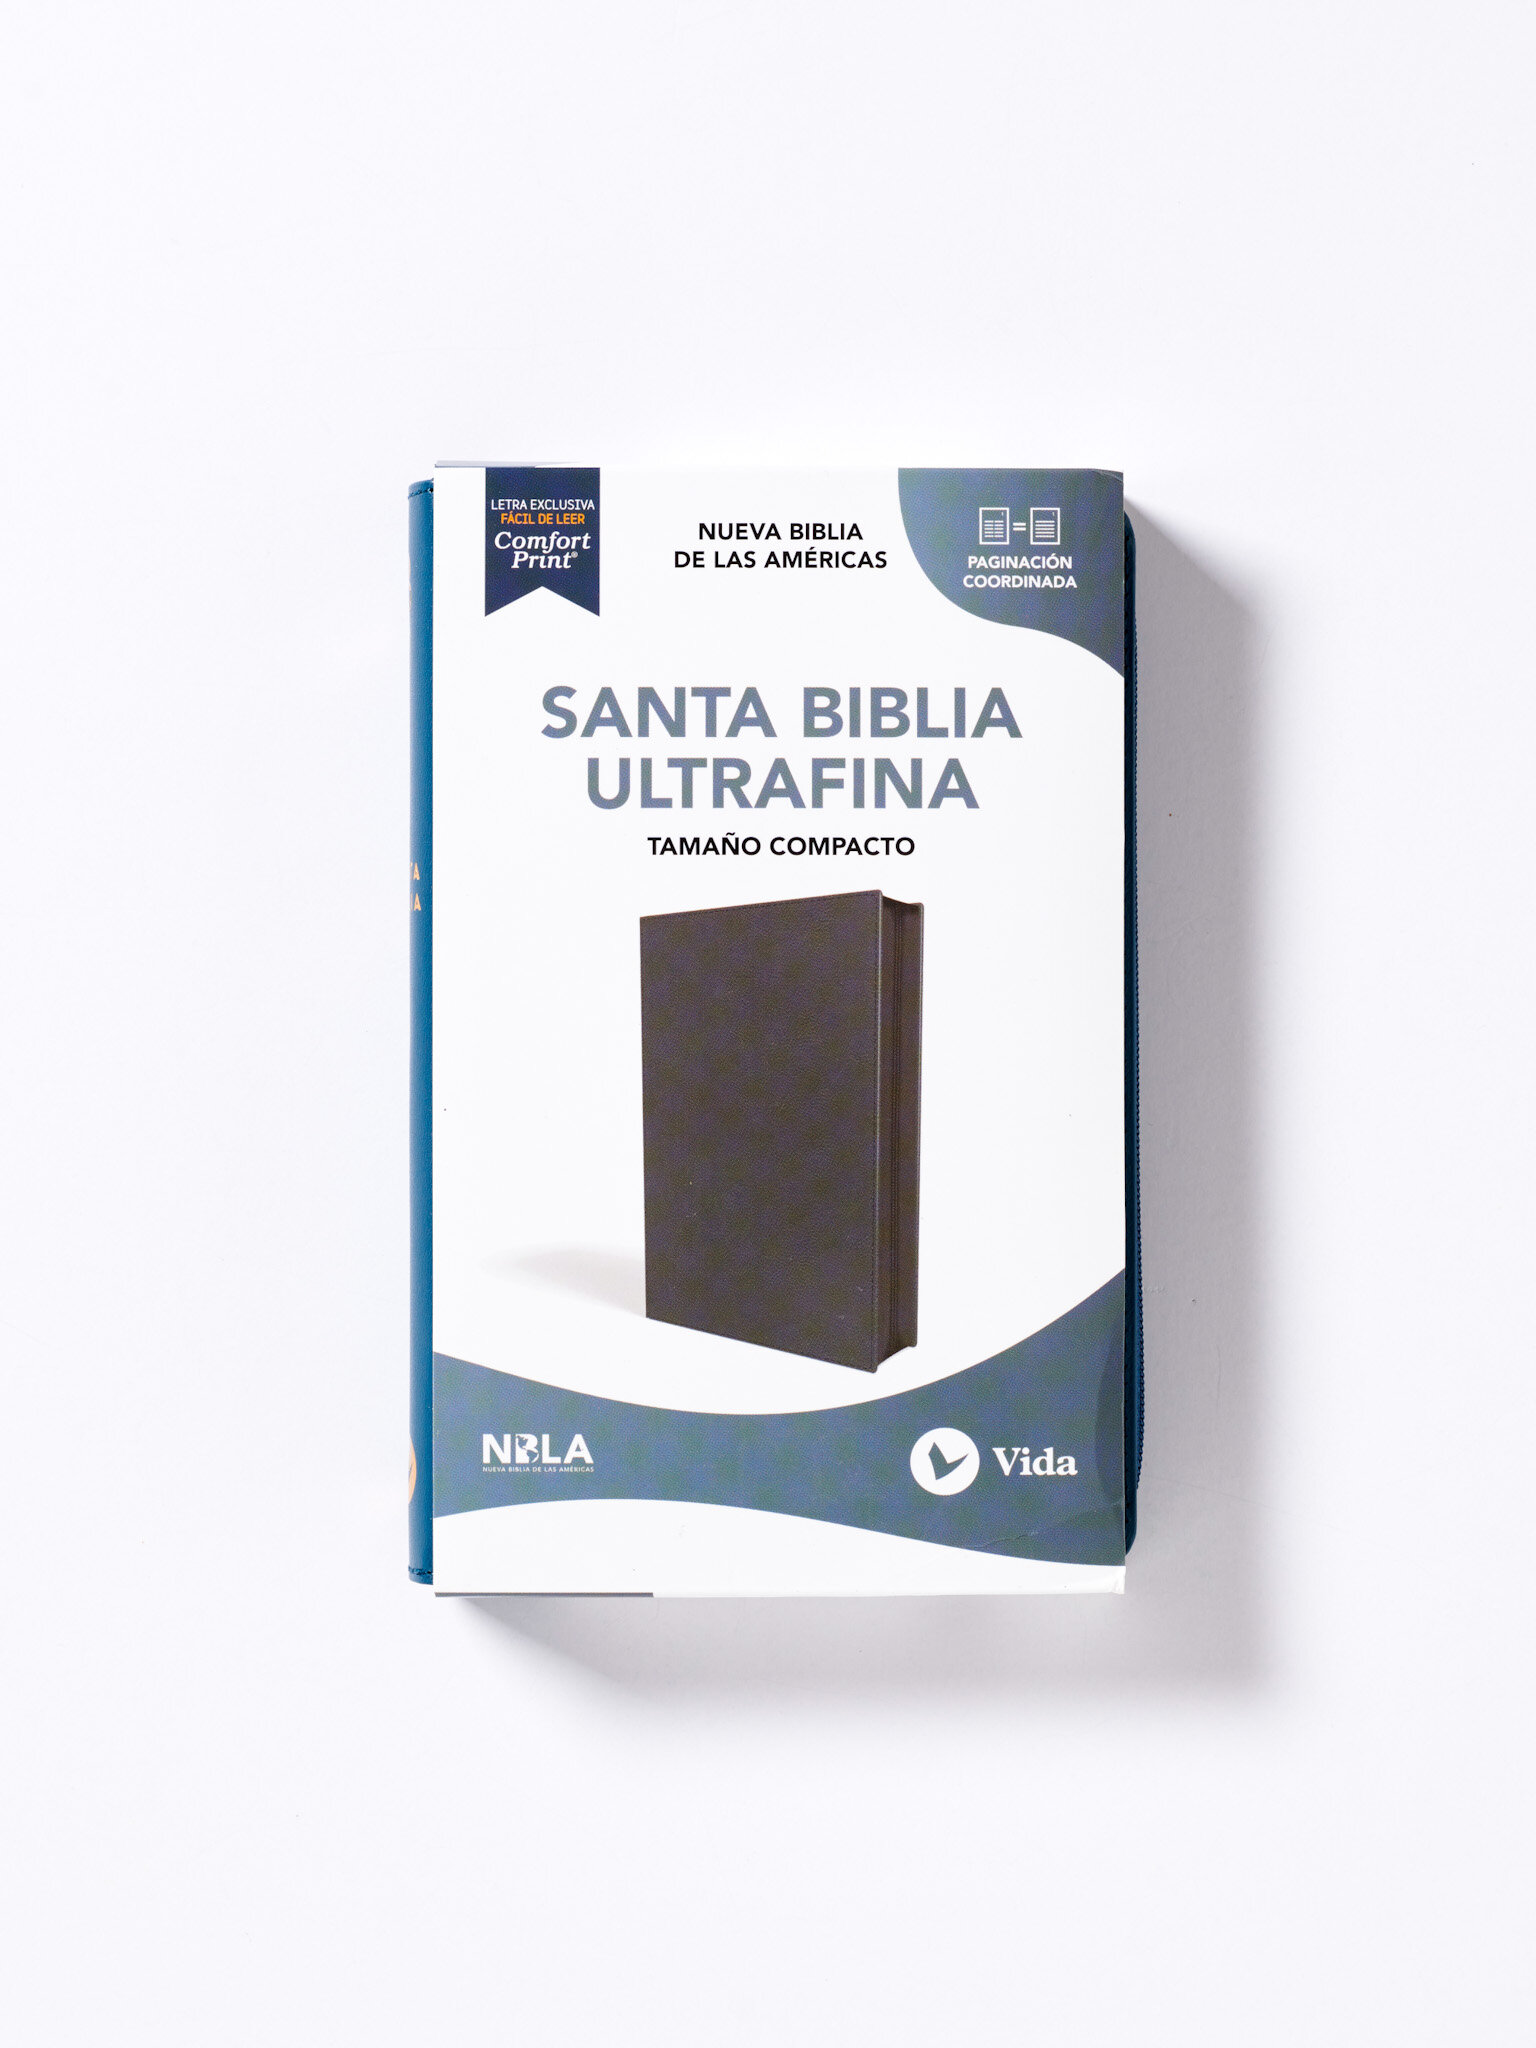 Ultrafina compacta azul box.JPG